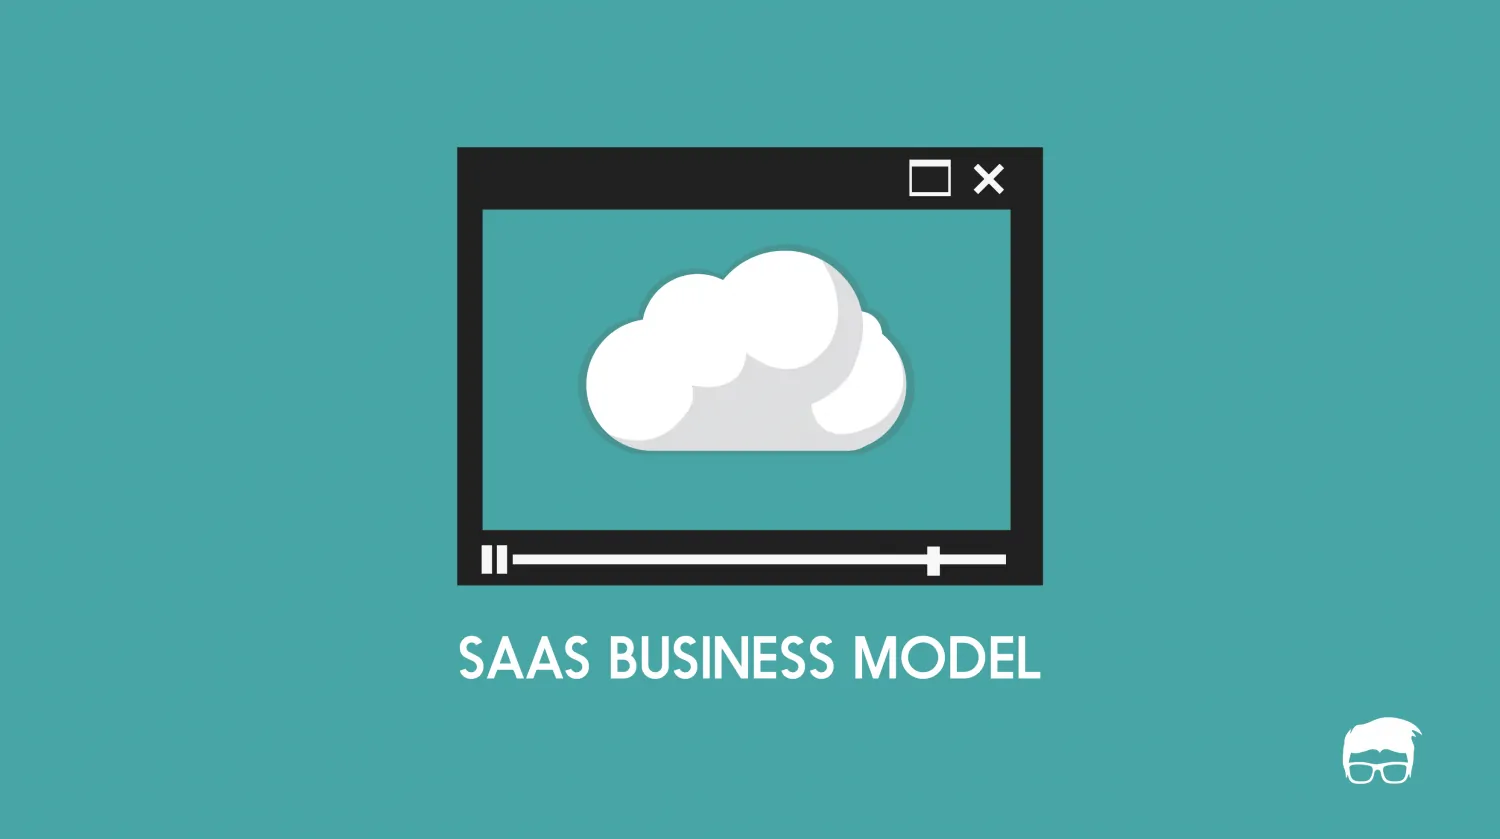 SAAS Business Model | How SAAS Works?